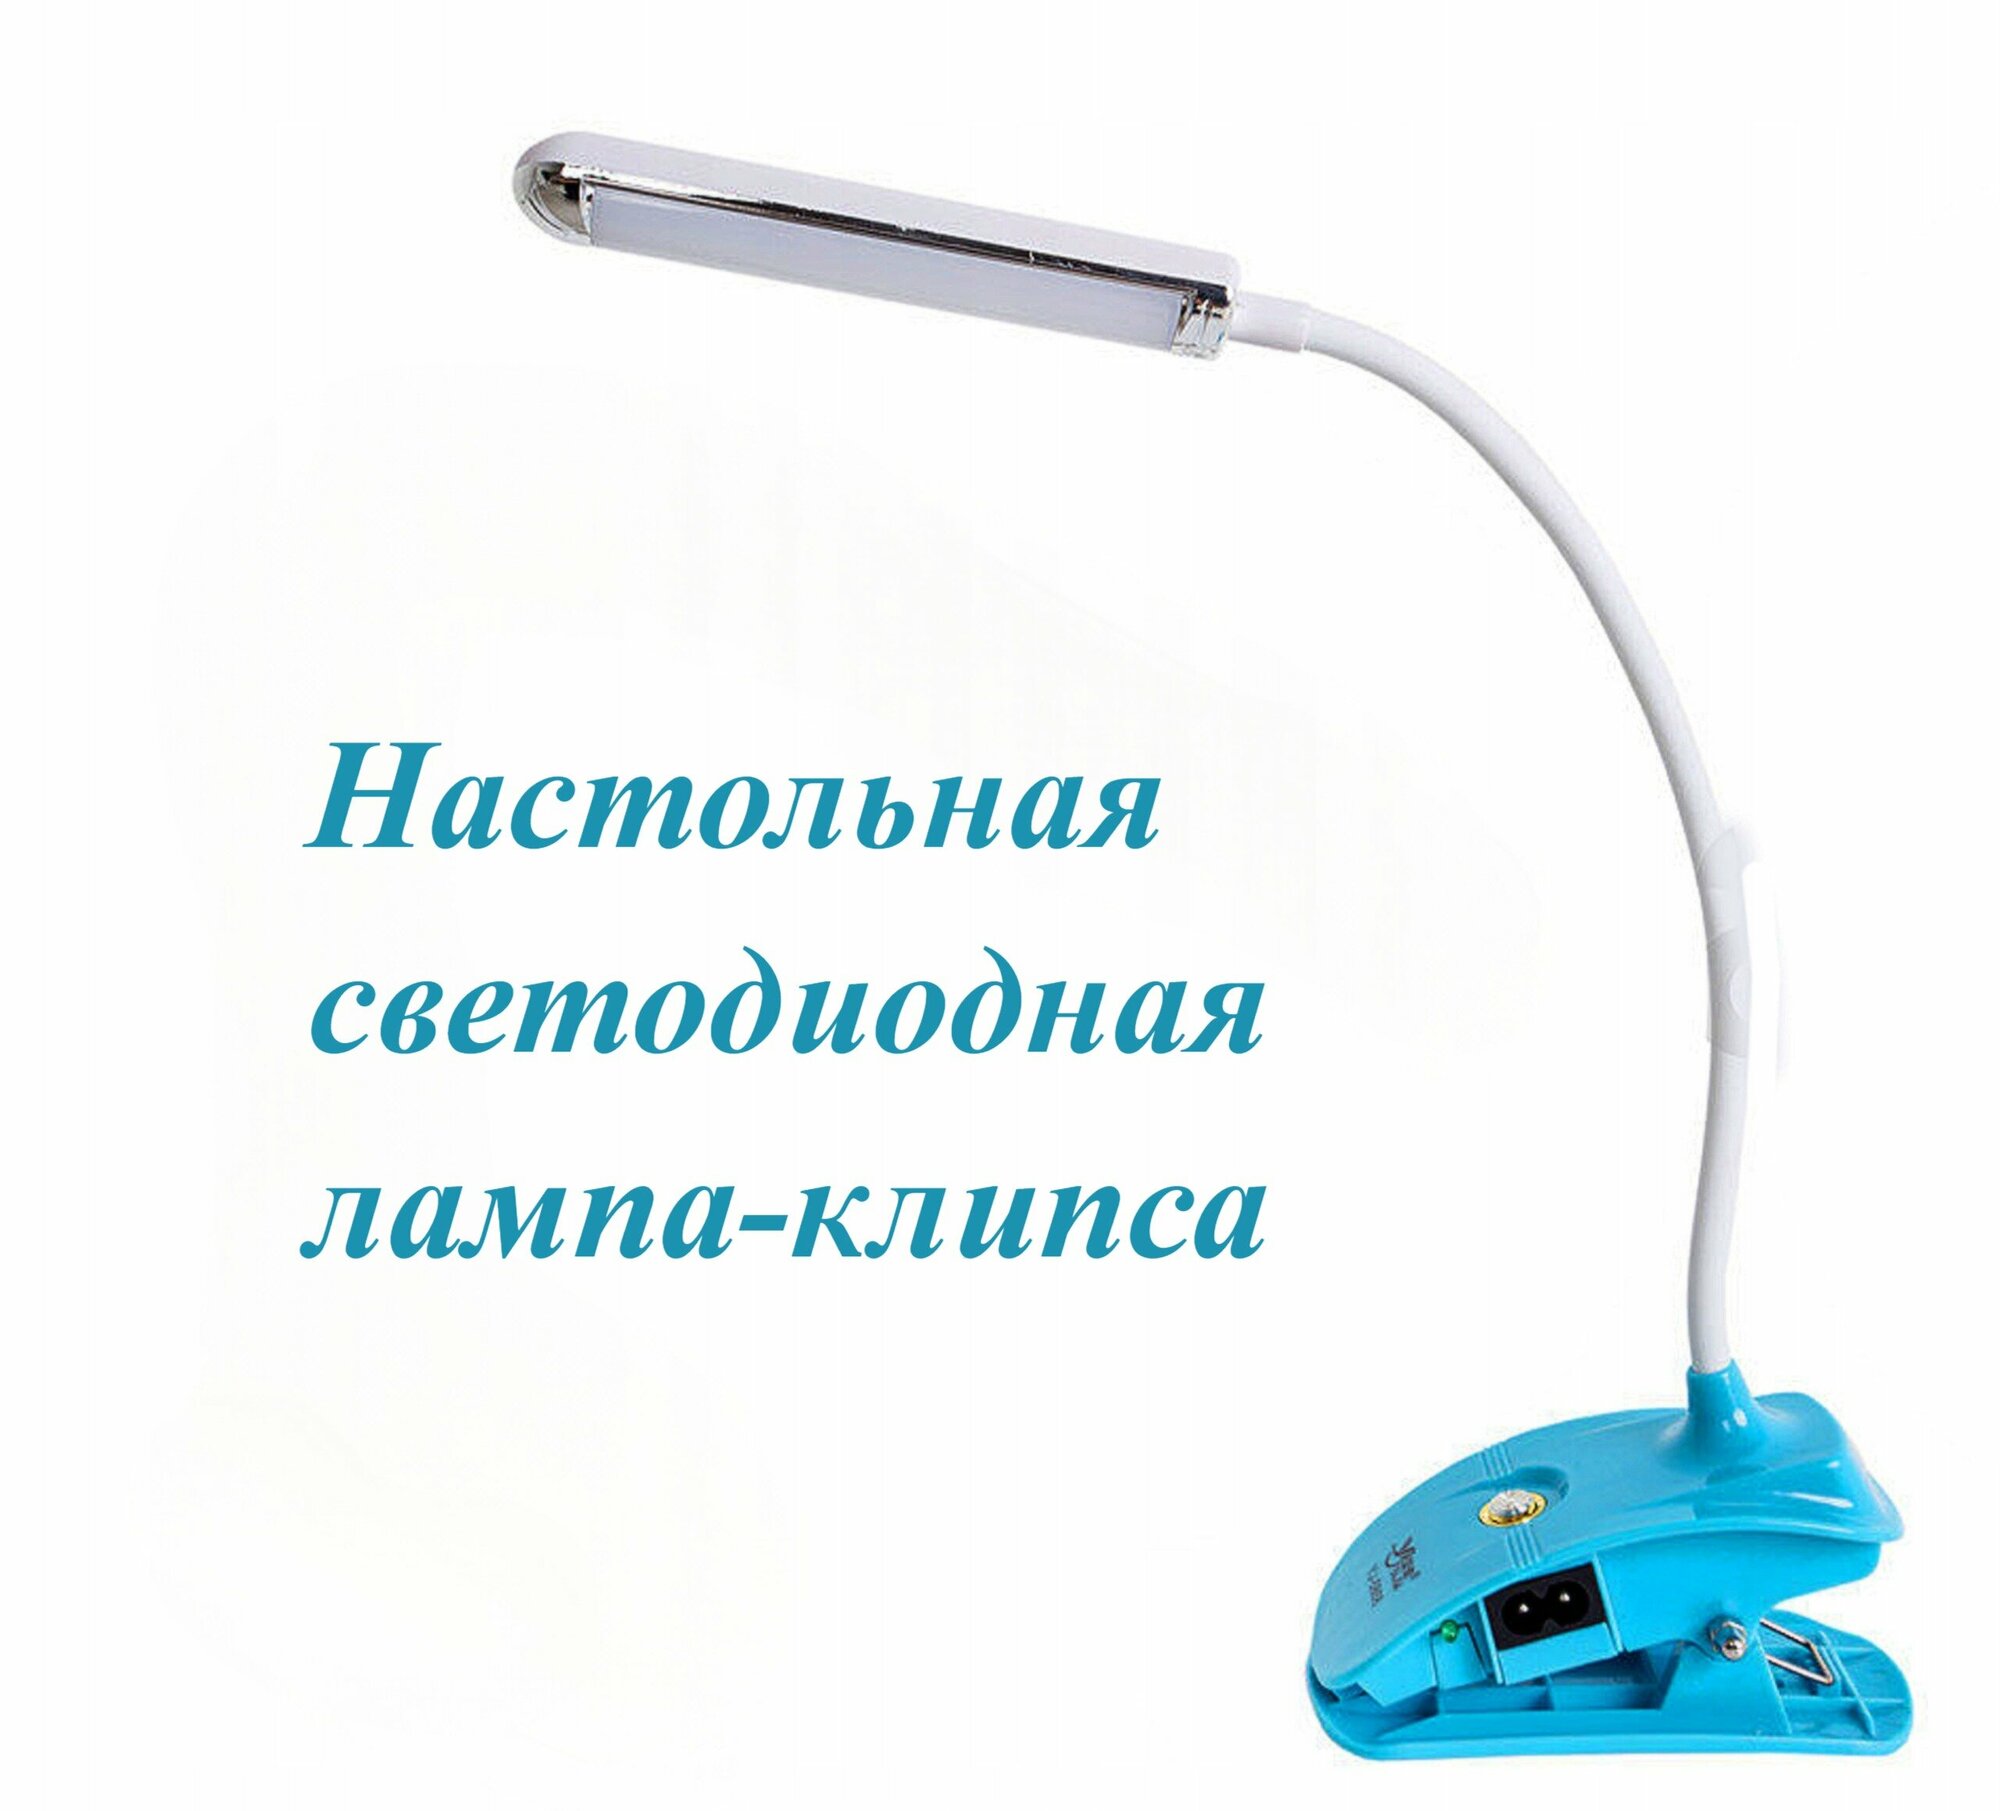 Настольная светодиодная лампа-клипса для чтения YJ-5868, голубая